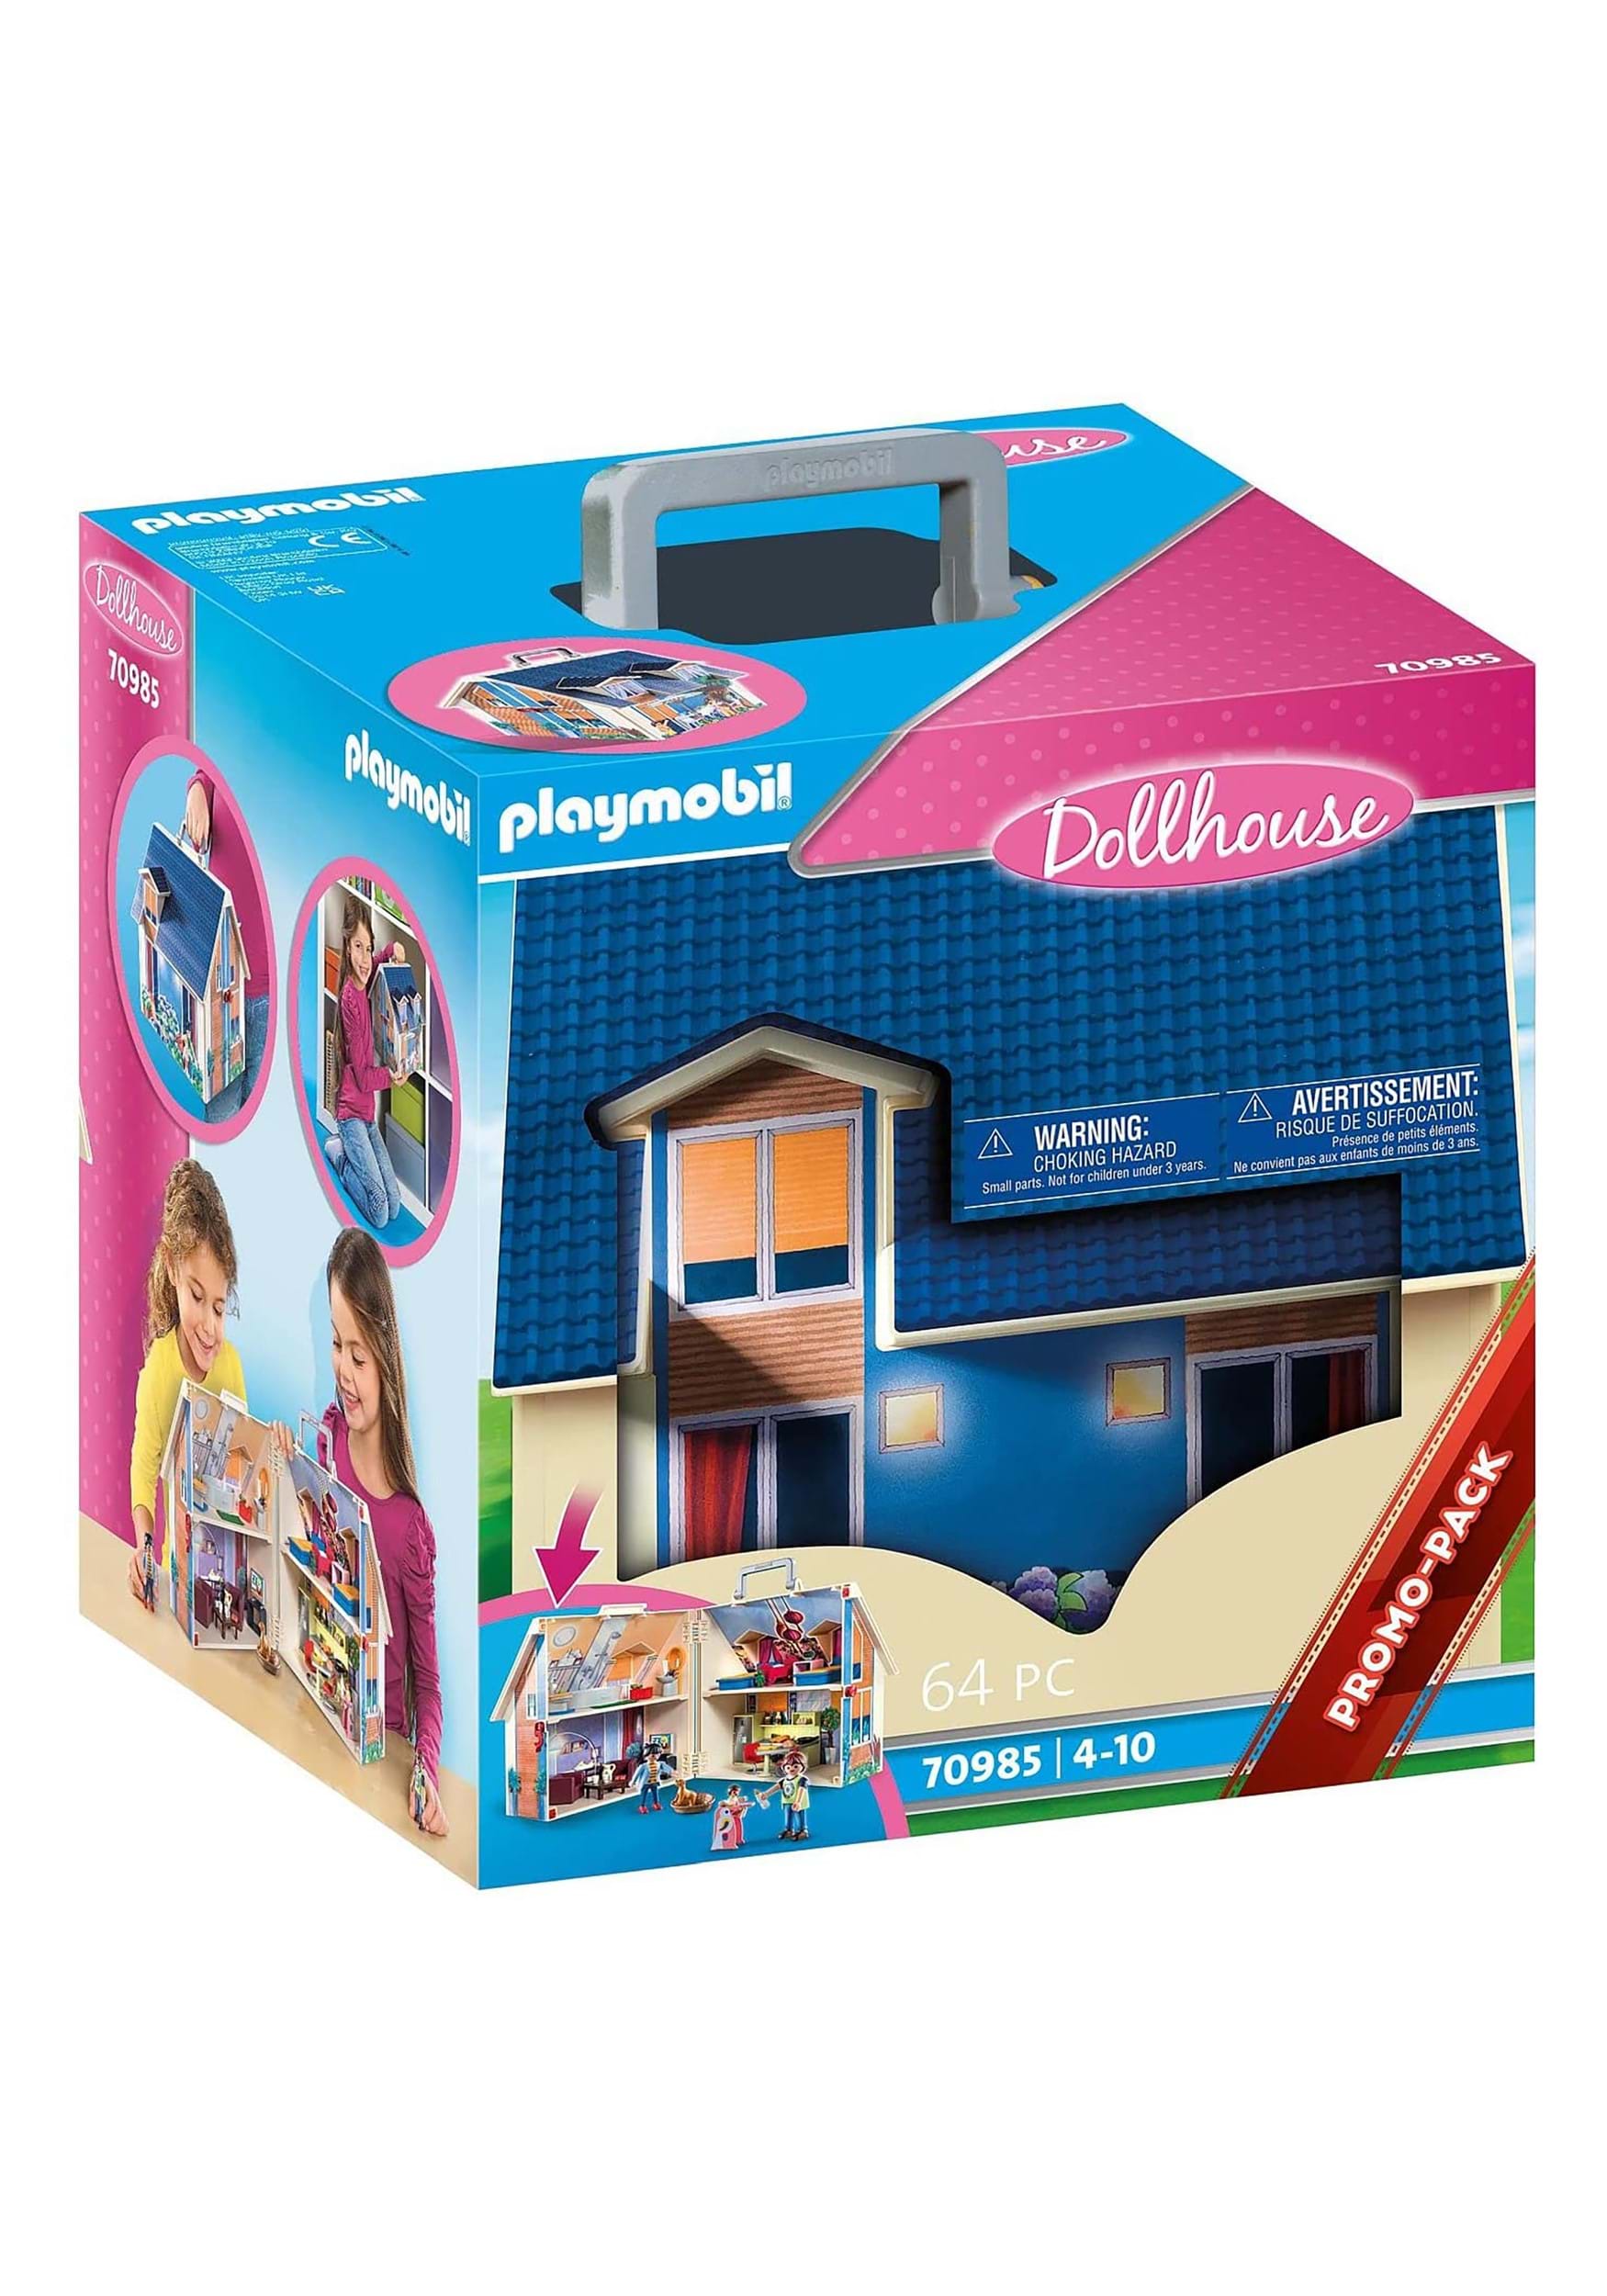 Playmobil Take Along 64 Piece Dollhouse